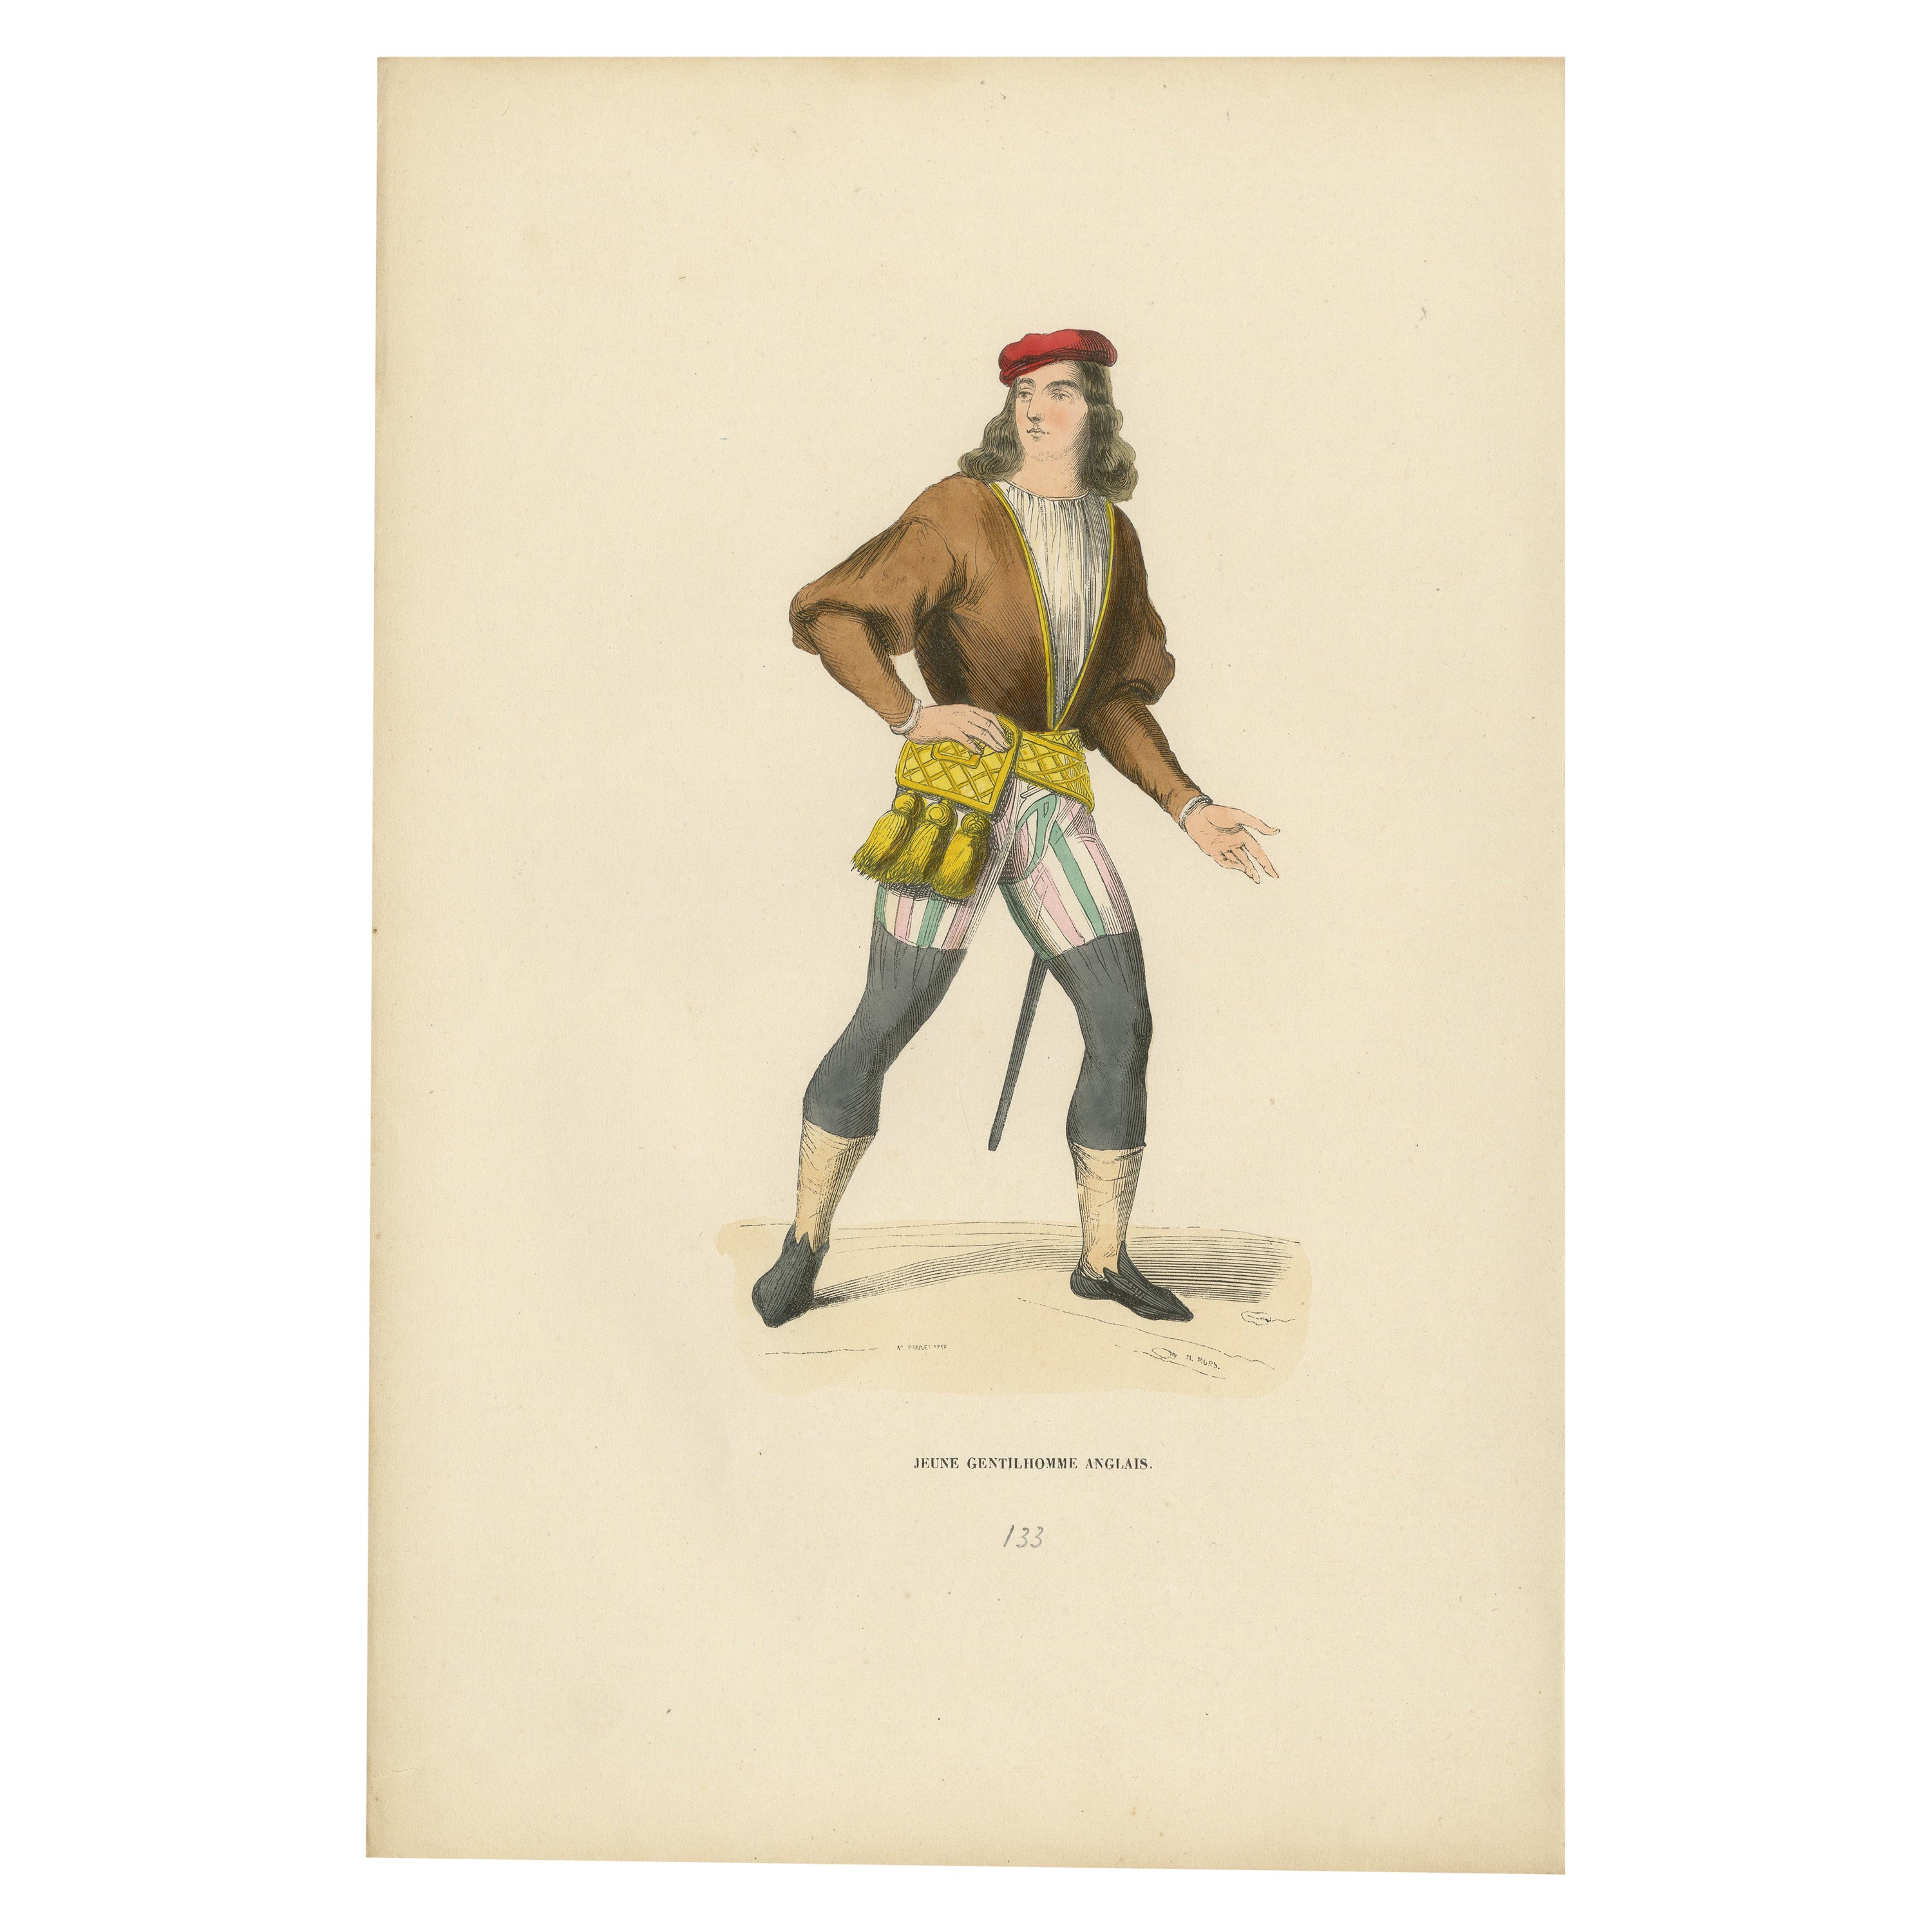 Stilvoller Swagger: Ein junger englischer Gentleman im Mittelalter, veröffentlicht 1847